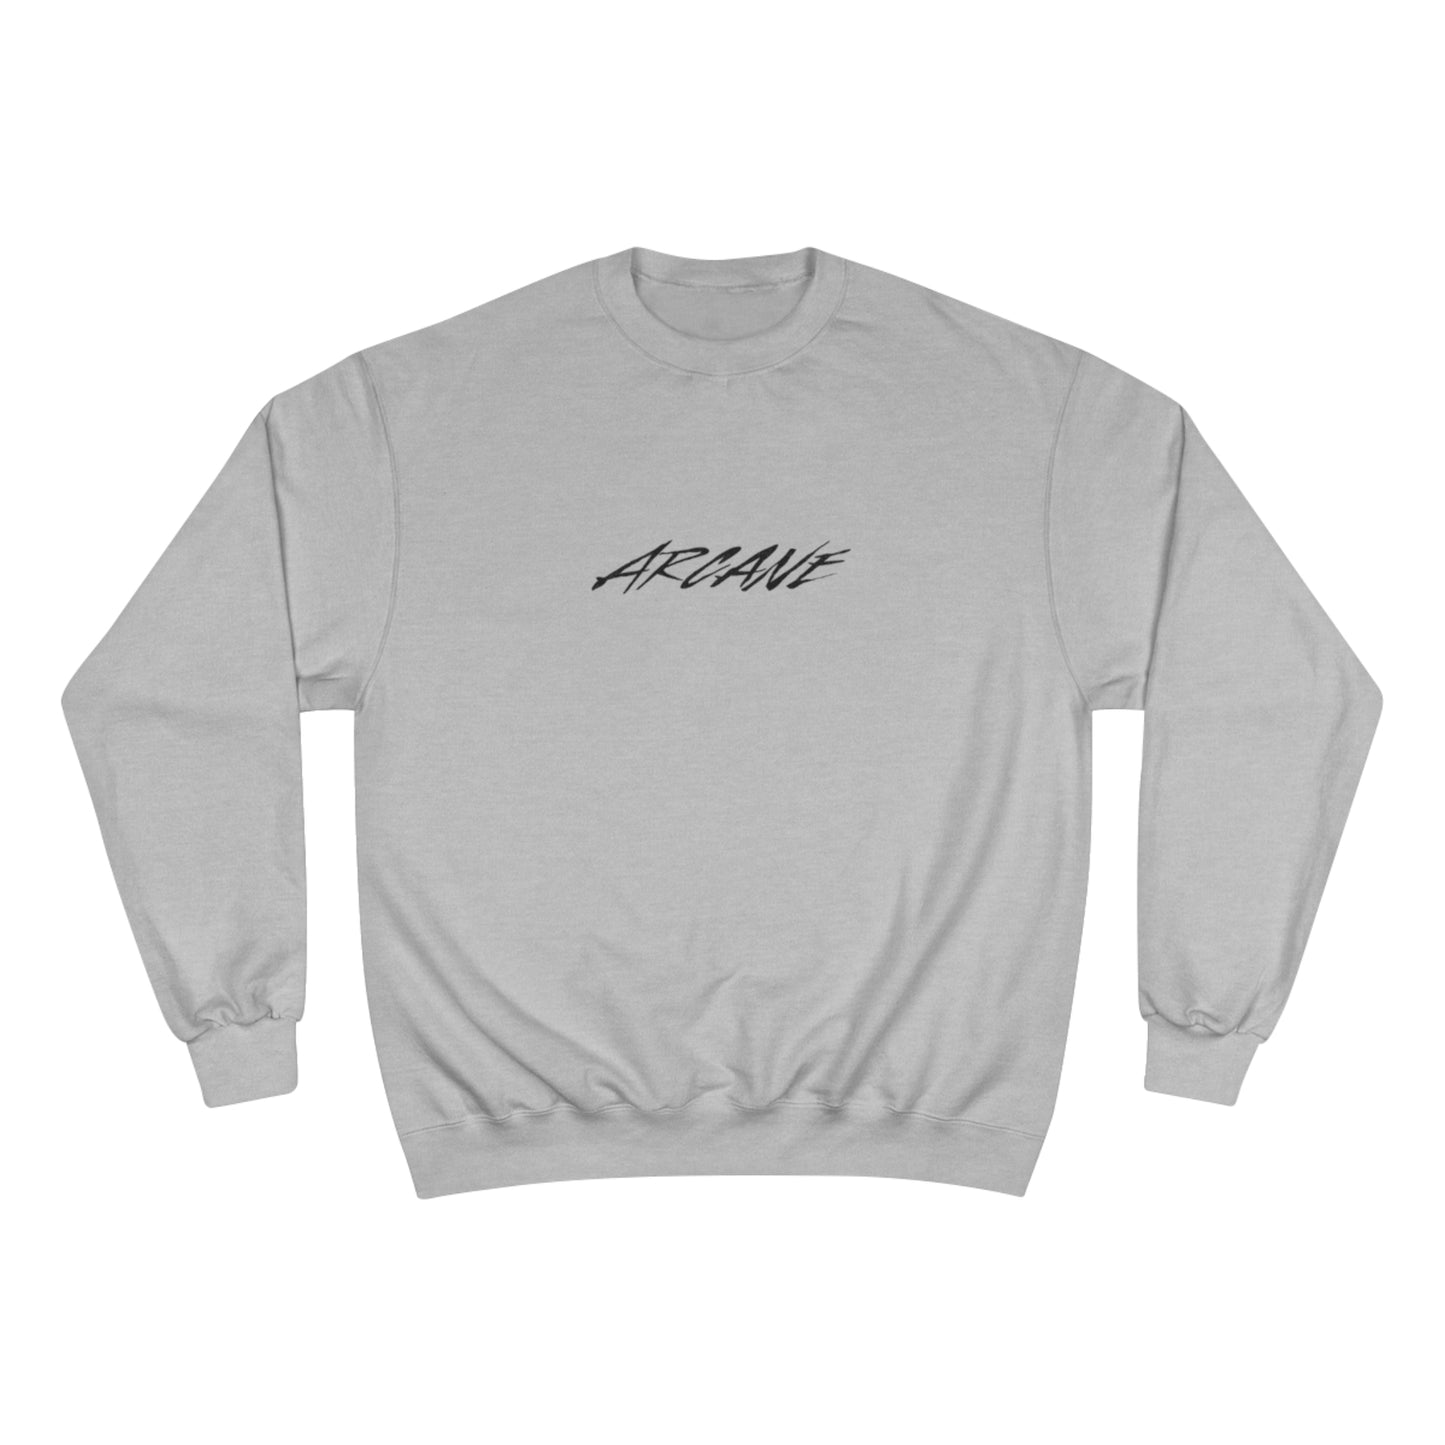 Arcane x Eco Eclectic - Champion Sweatshirt